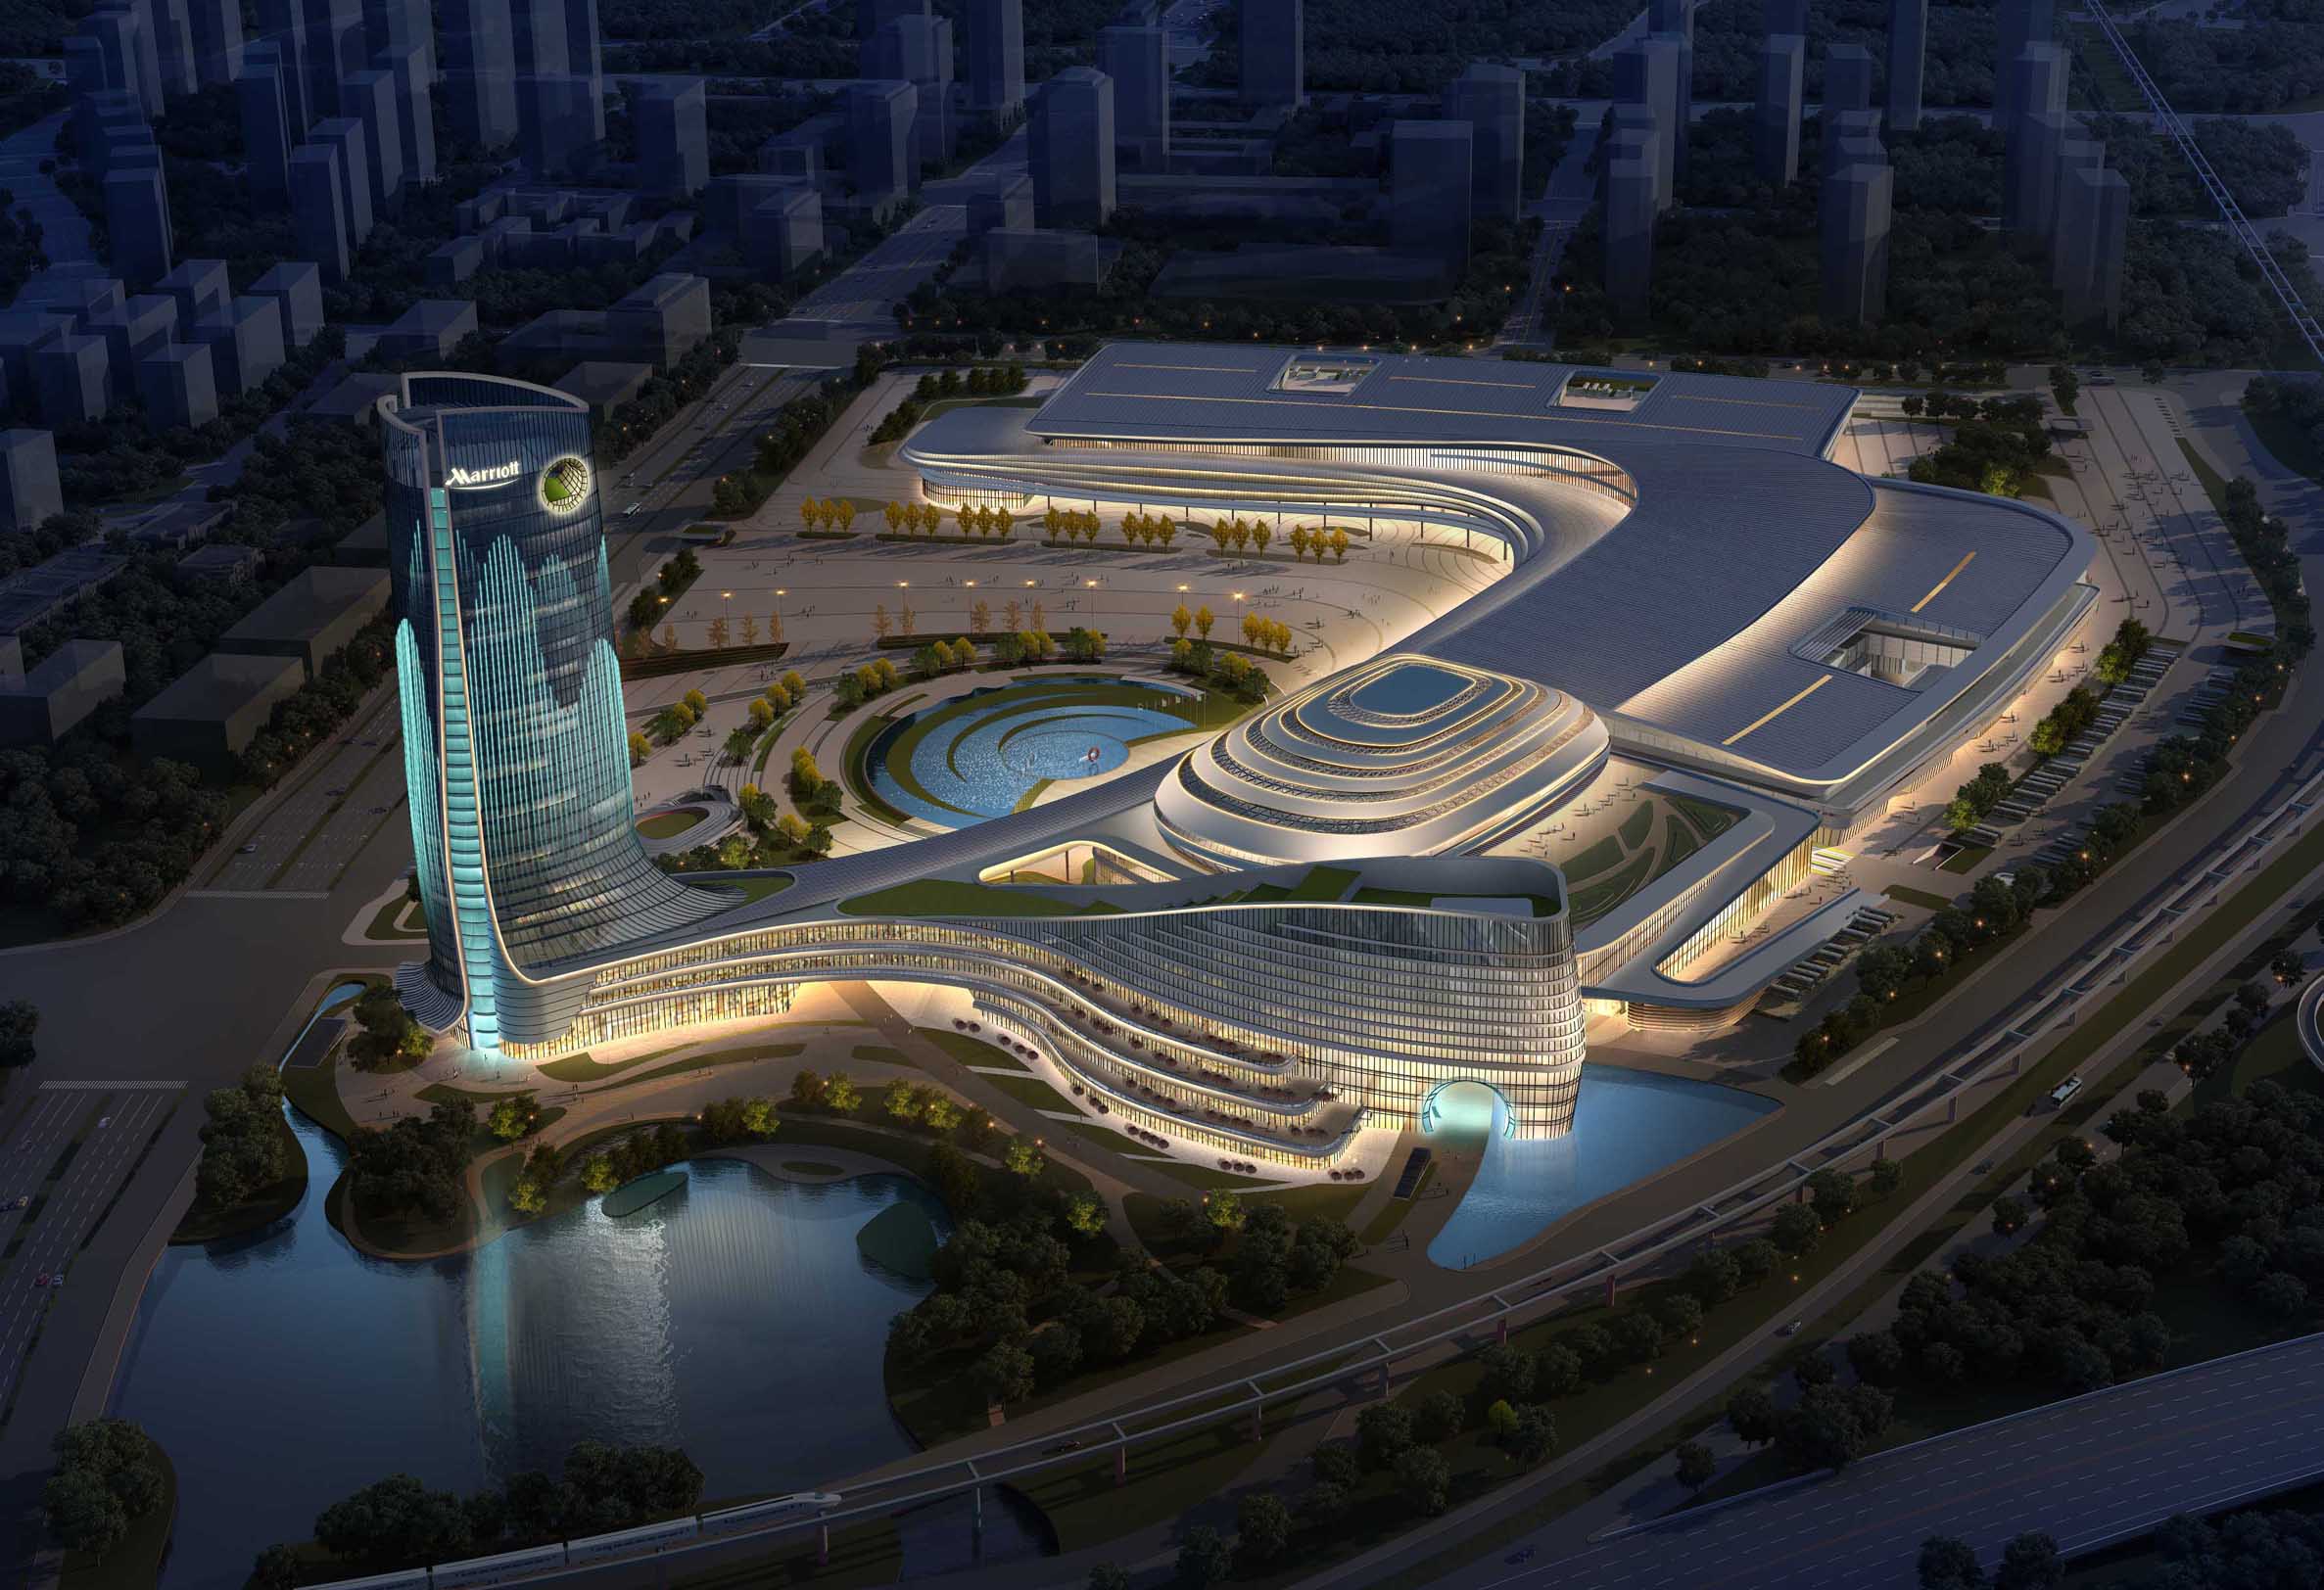 桂林國際會展中心建筑外立面照明設計——2021神燈獎申報雅江創意照明獎